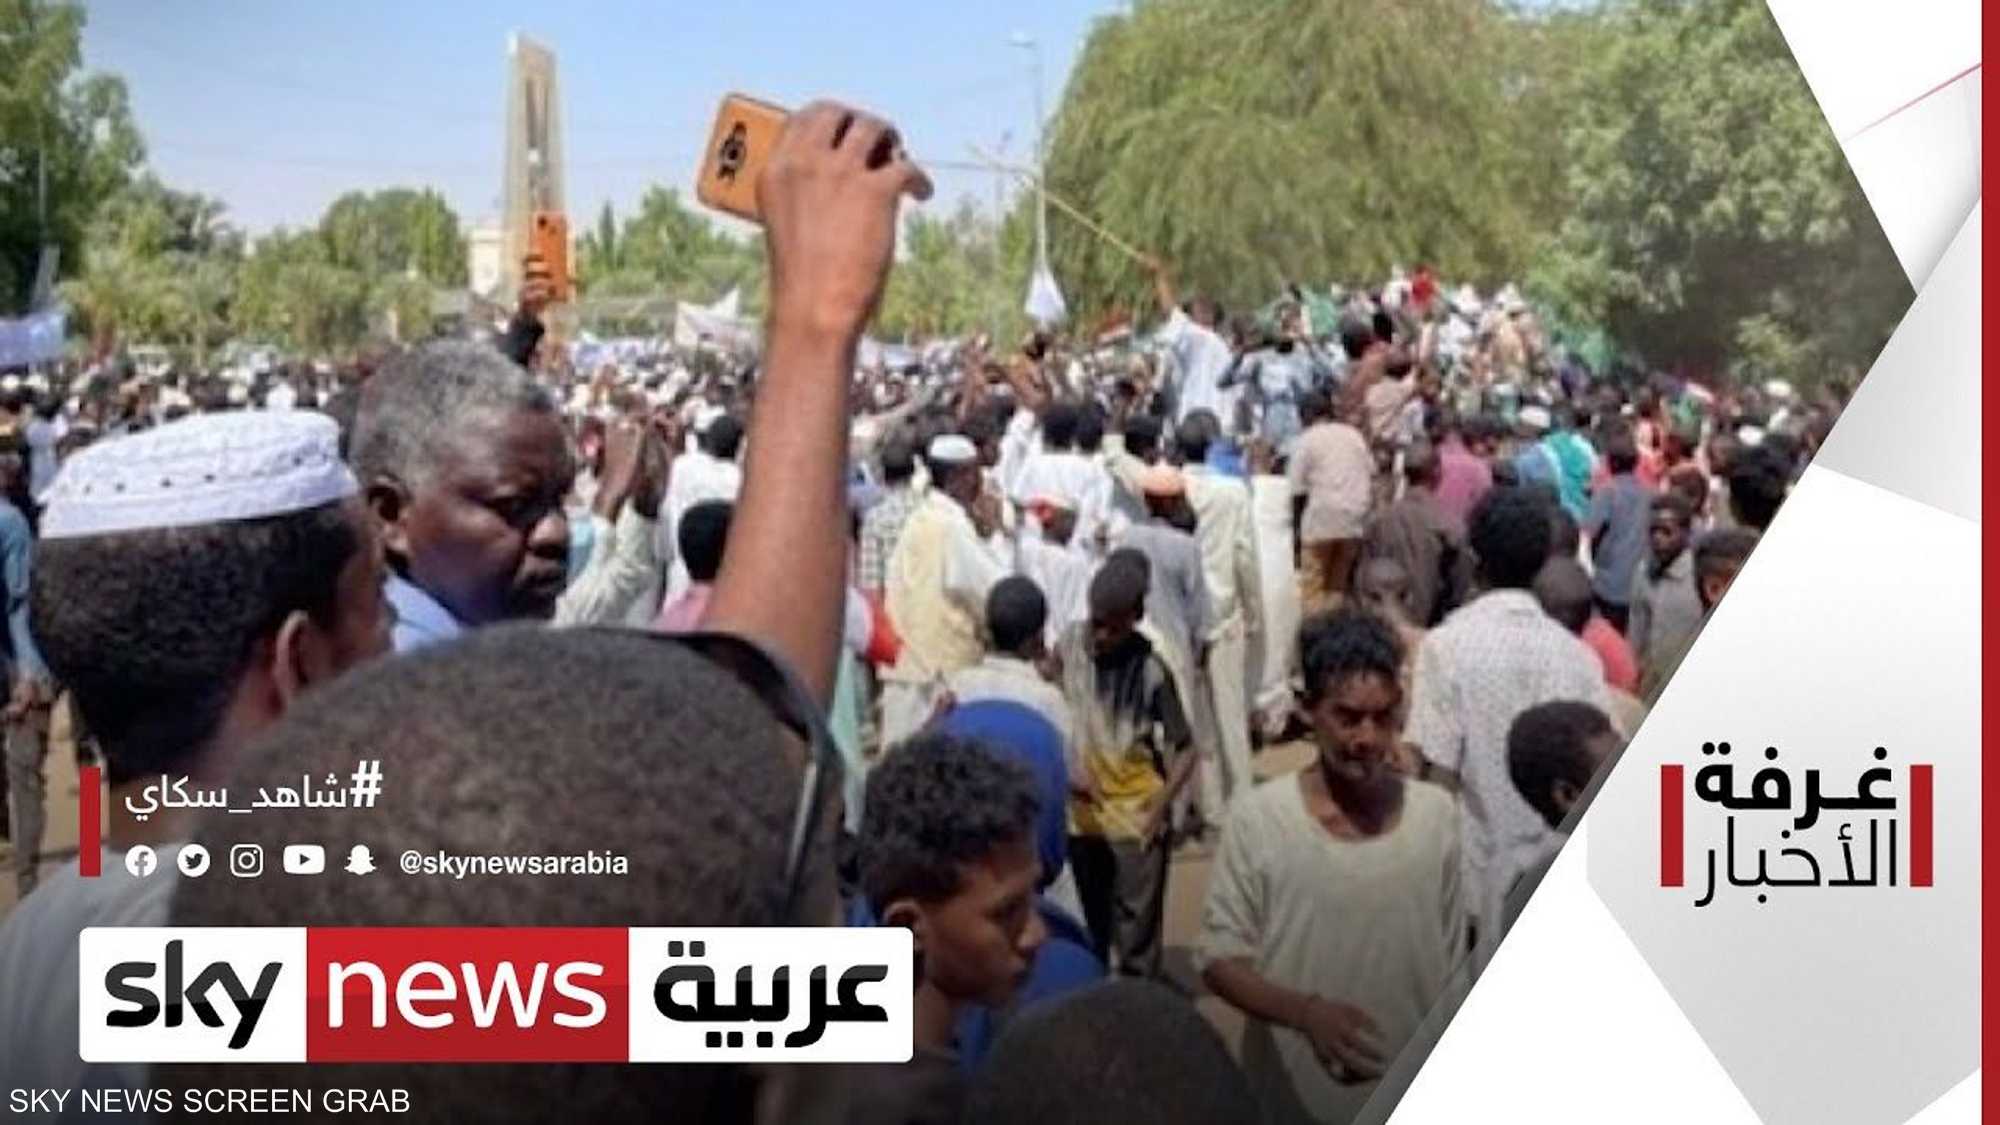 ما السبيل لتهدئة المشهد المتأزم في السودان؟